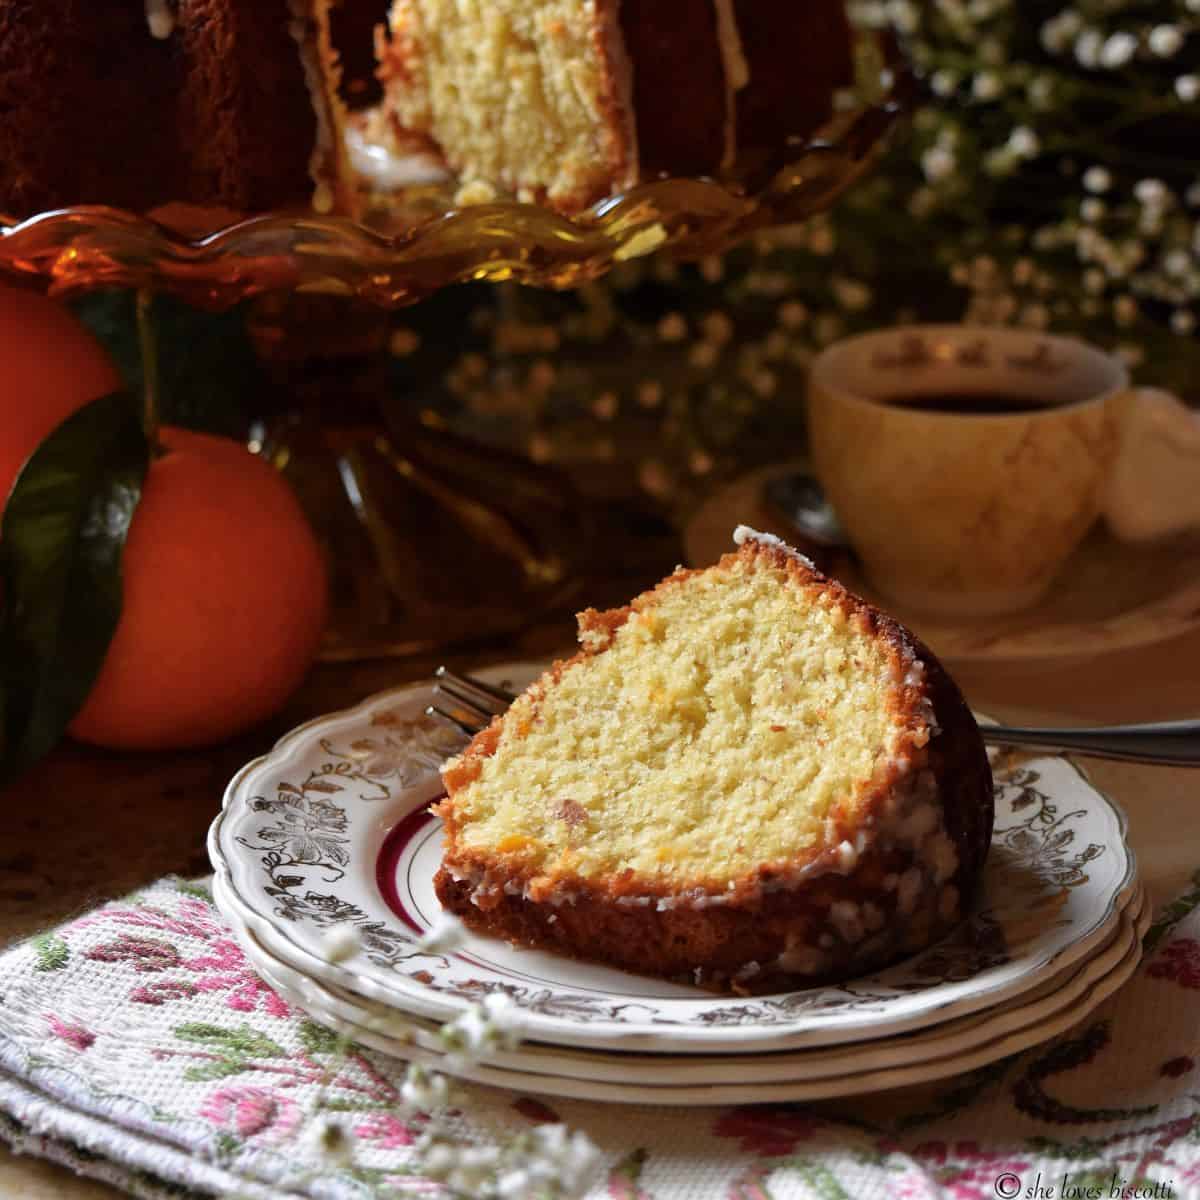 Almond Mini Bundt Cakes with Orange Glaze - My Sweet Precision